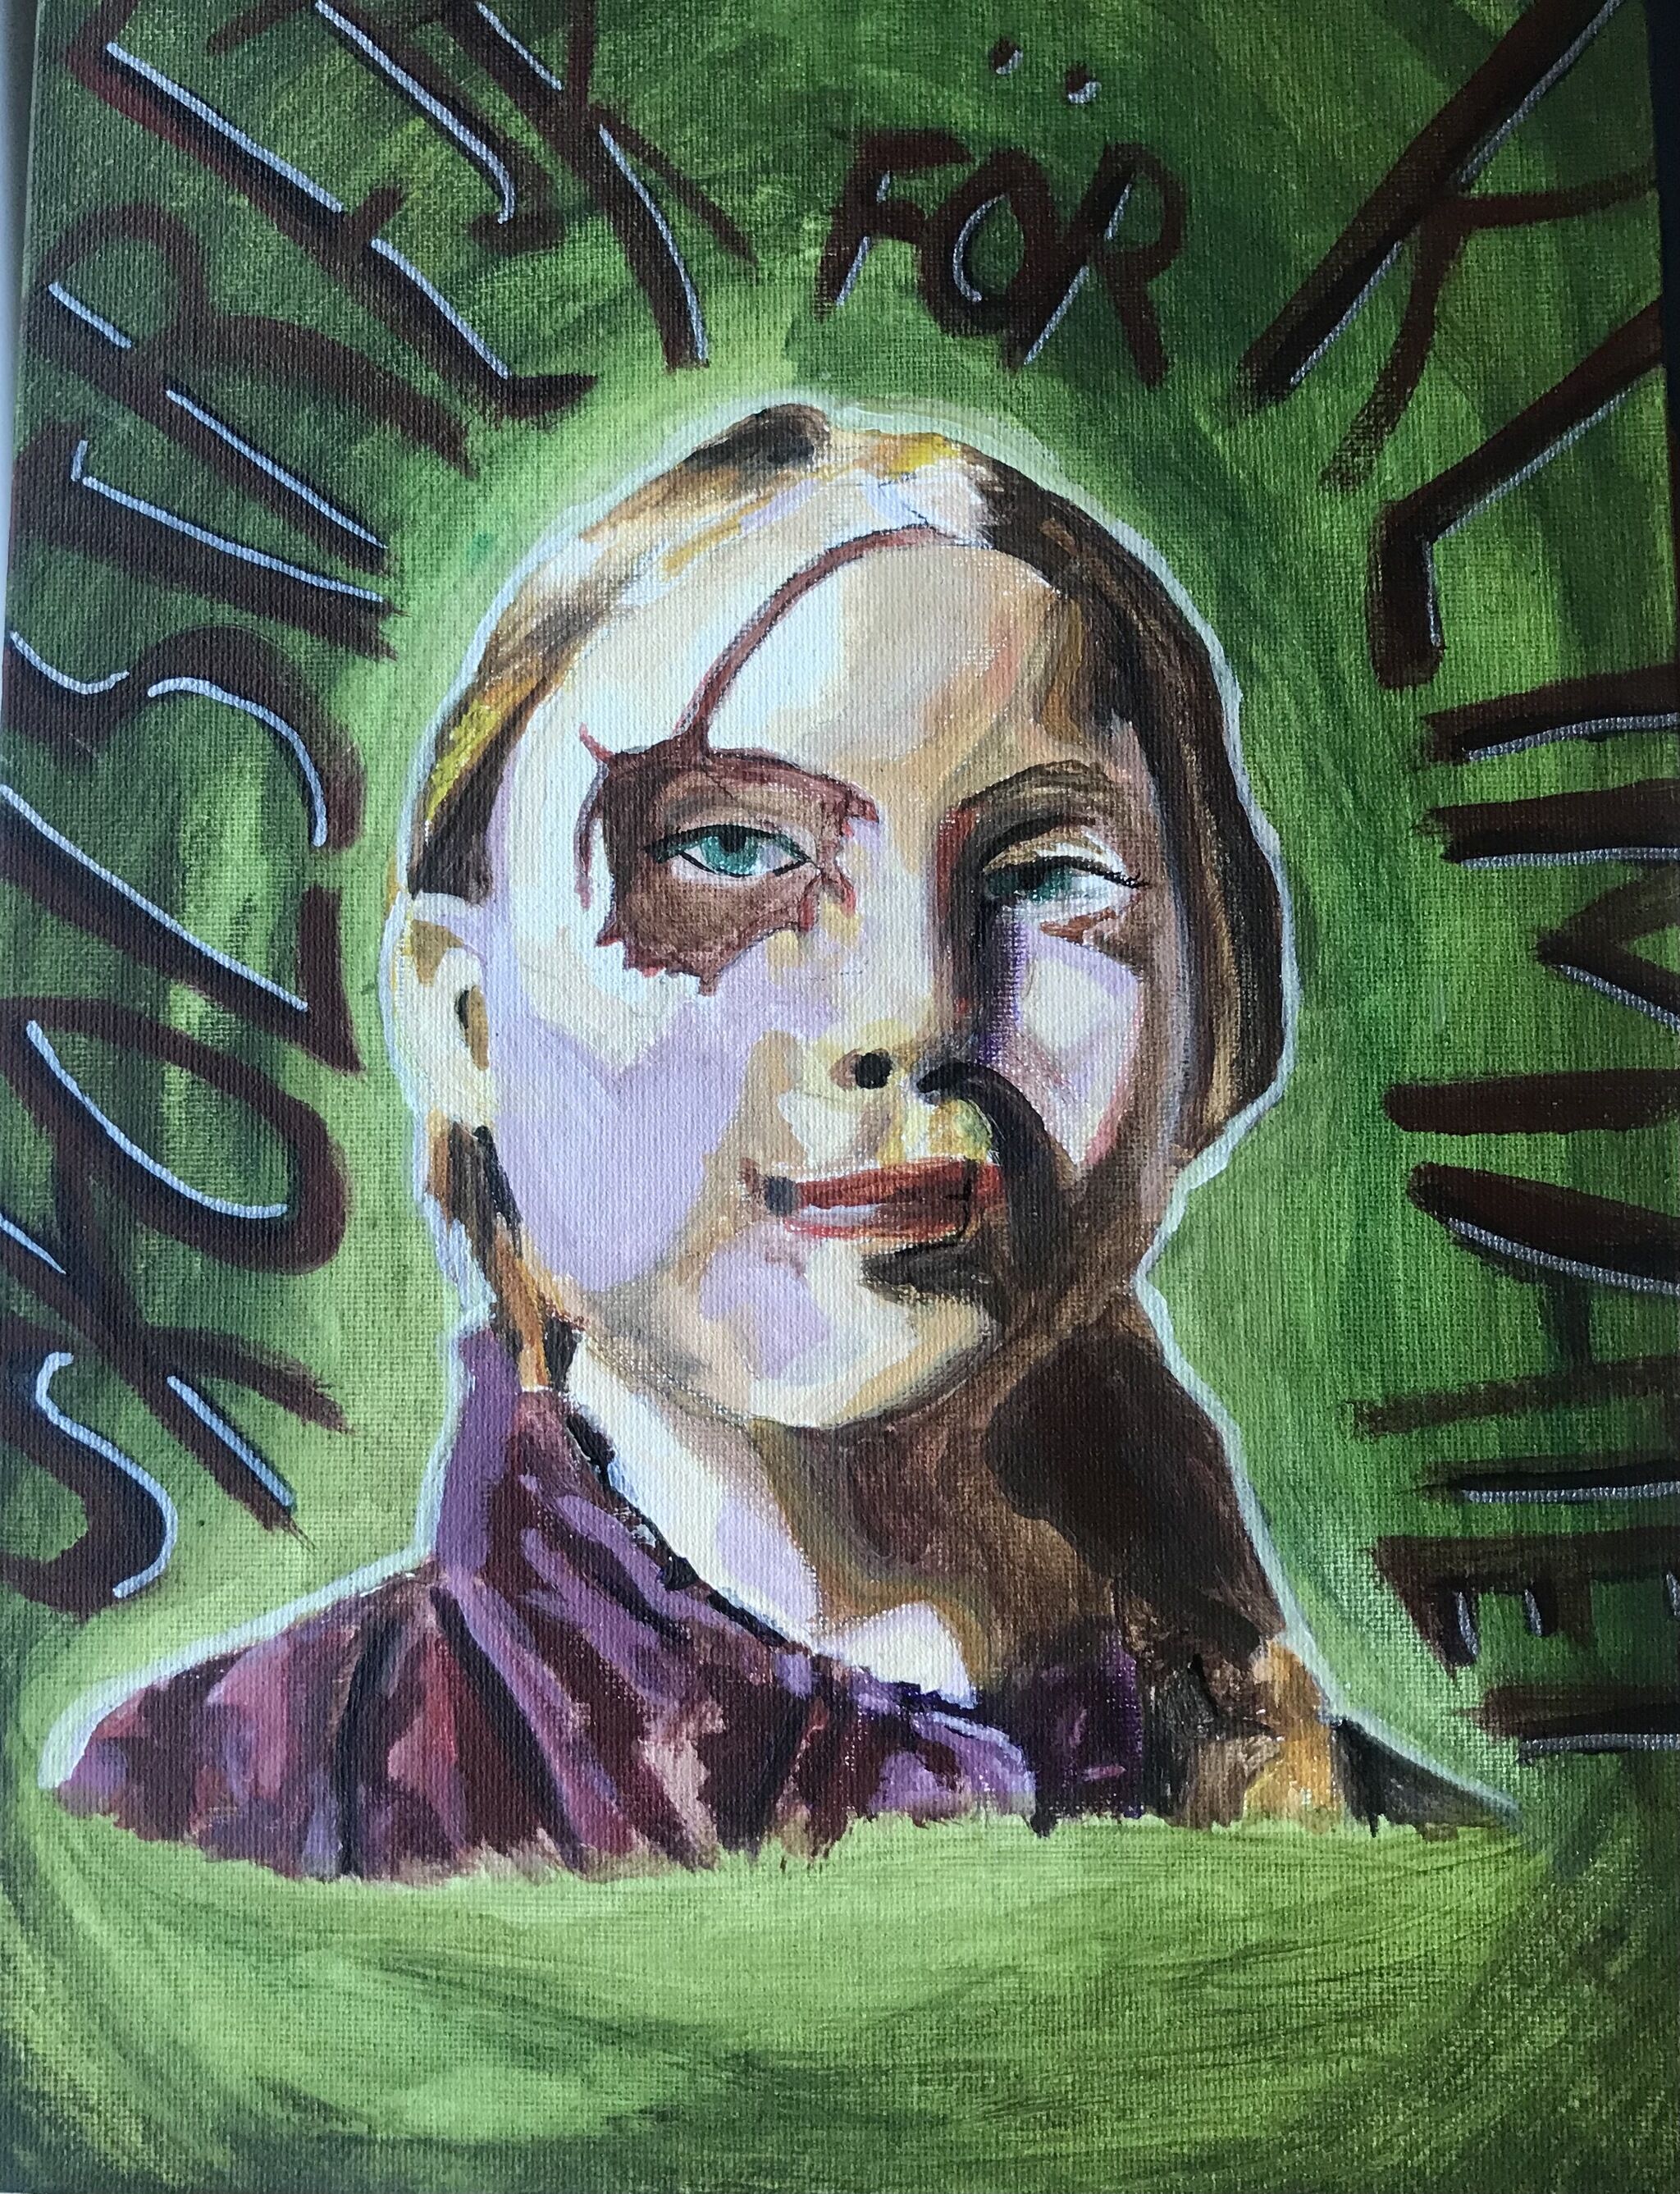 A portrait of Greta Thunberg against a dark green background. 